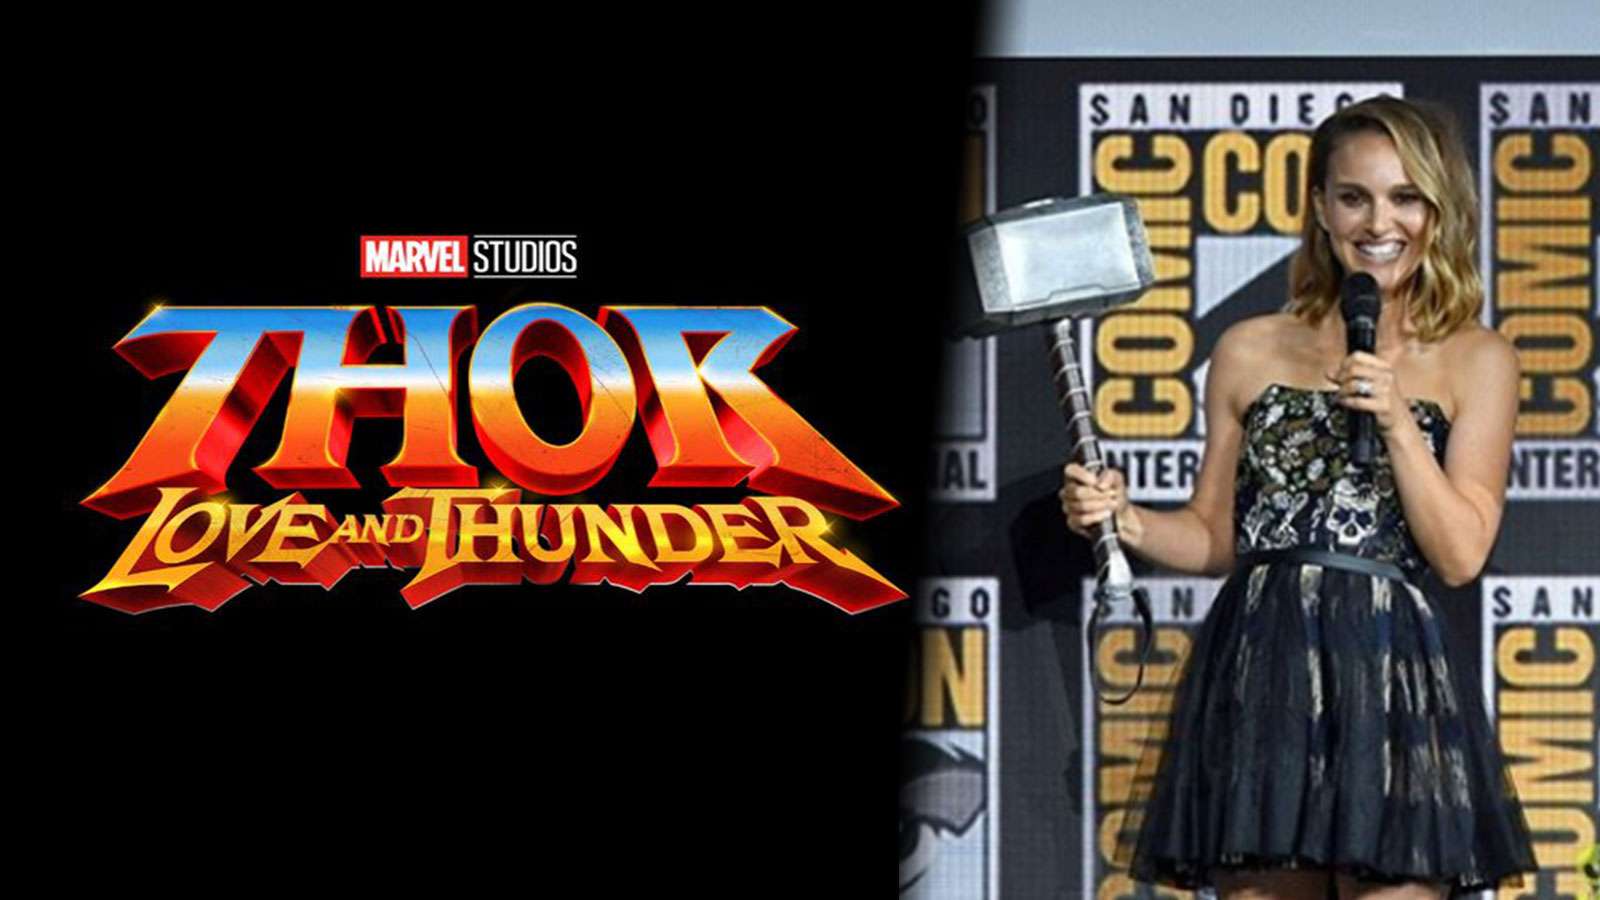 La date de production et sortie de Thor Love and Thunder a été révélée